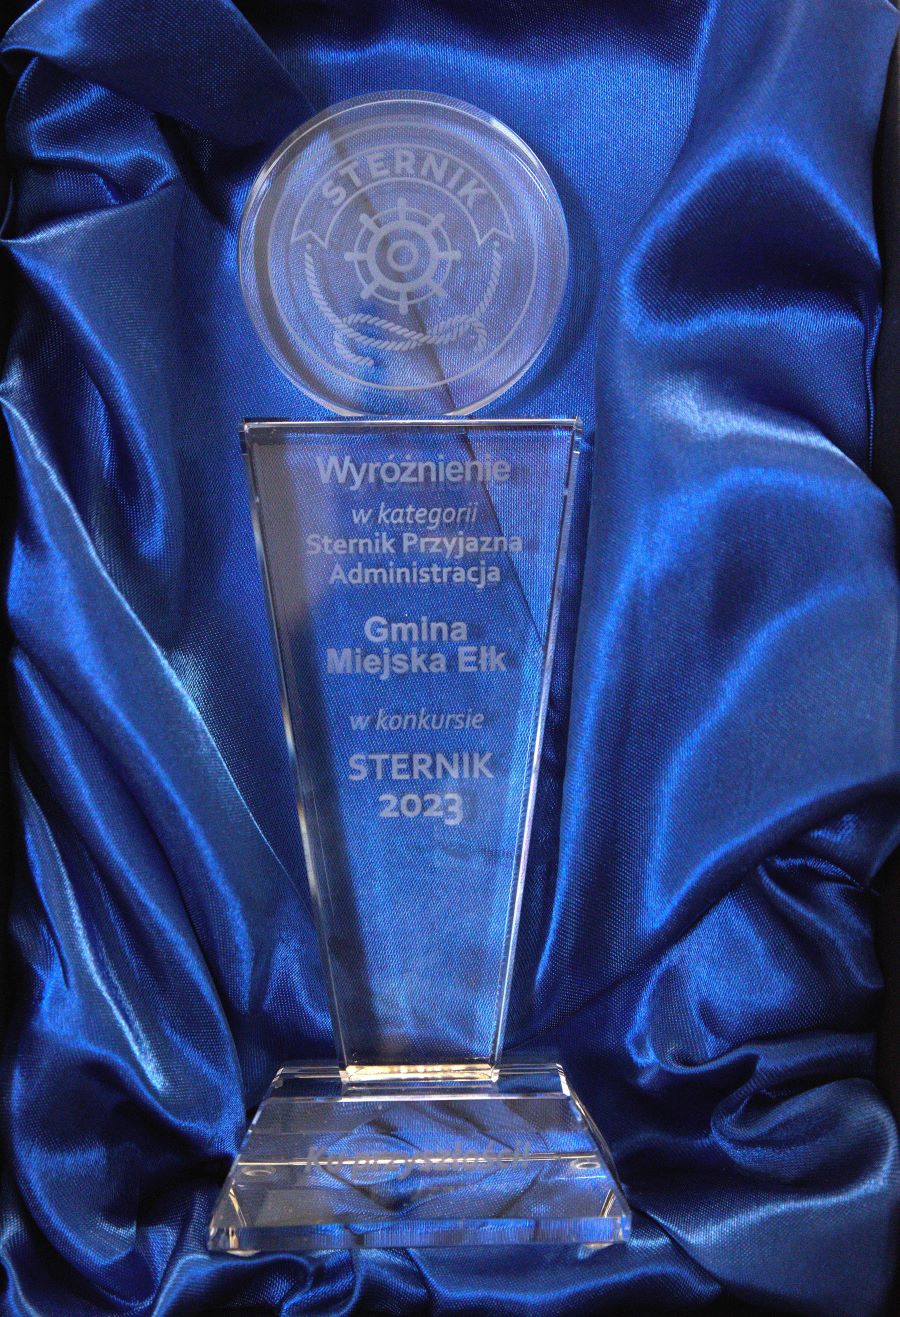 Eine weitere Auszeichnung für Ełk im Wettbewerb "Steuermann"